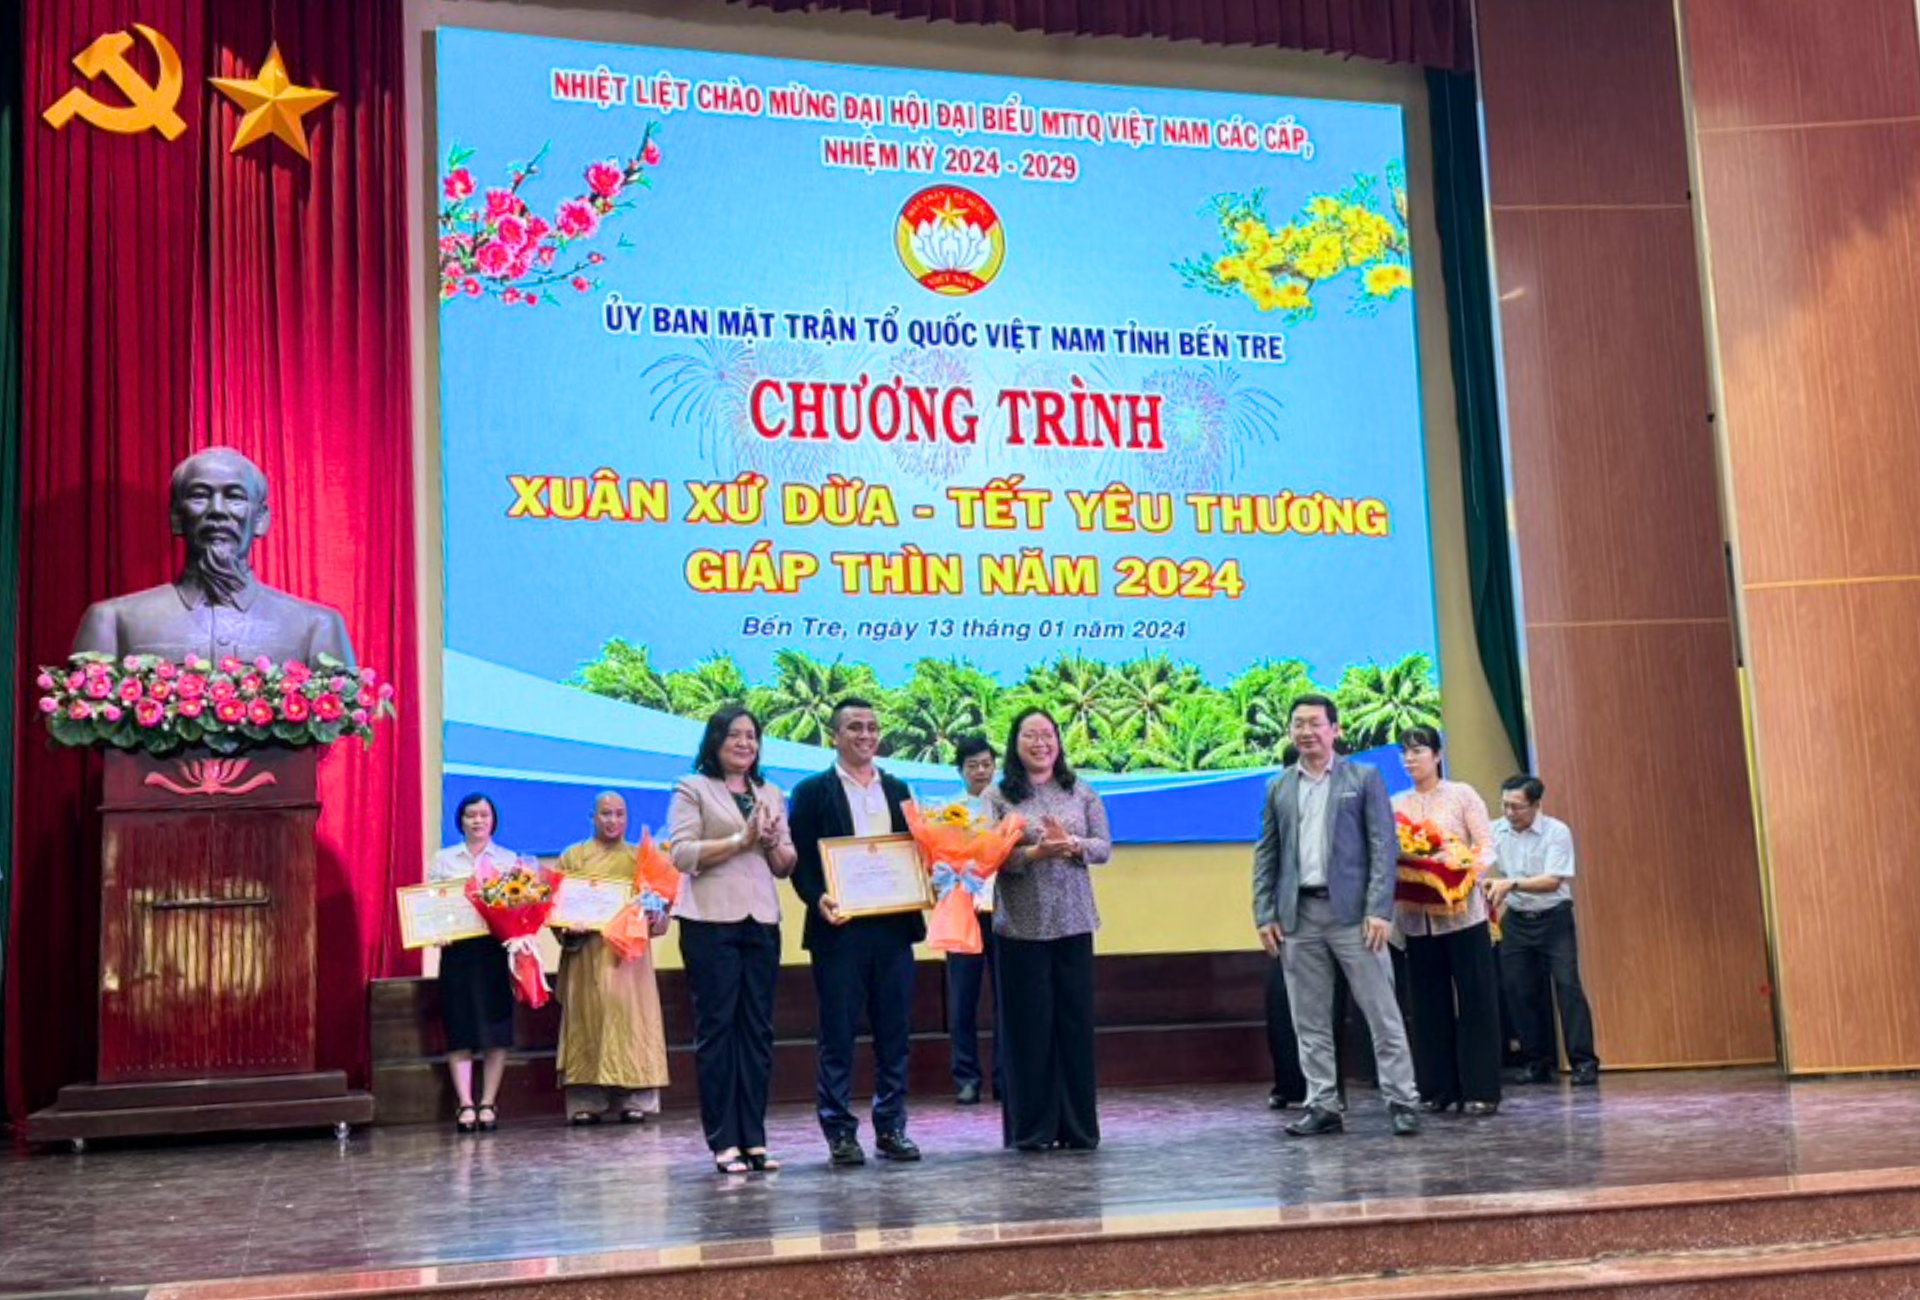 Tập đoàn Hoa Sen nhận bằng khen của UBND tỉnh Bến Tre tại chương trình “Xuân xứ Dừa - Tết yêu thương” Giáp Thìn 2024